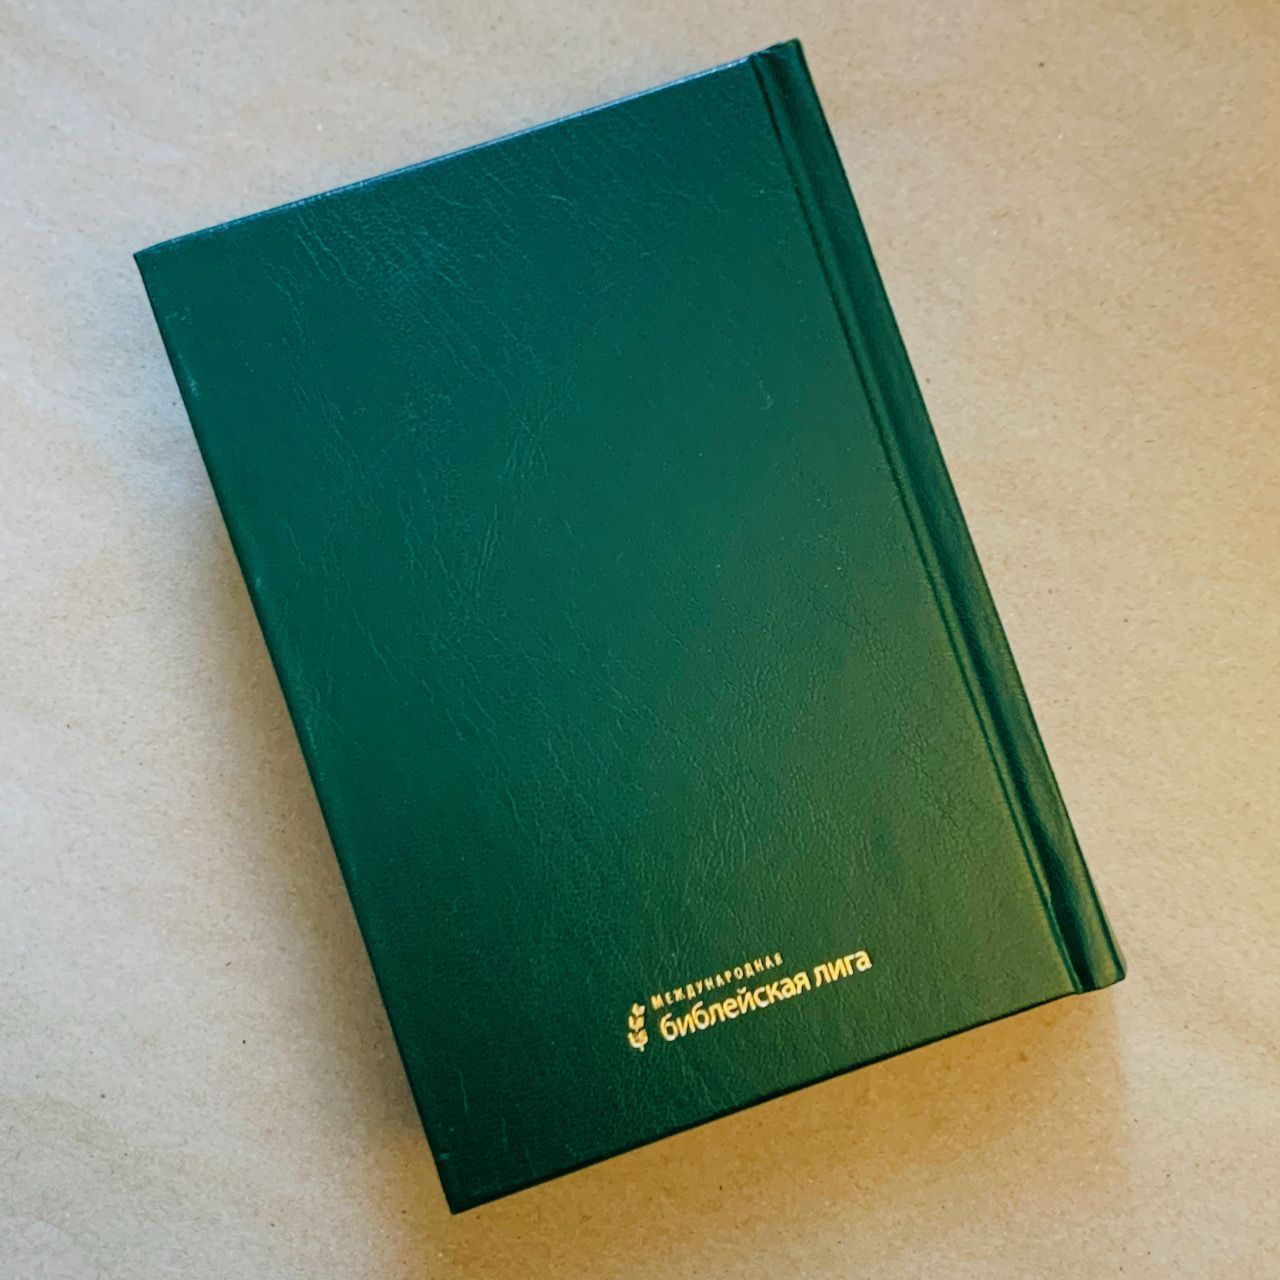 Библия 043 формат с надписью "Священное писание", твердый переплет, 120*174 мм,  цвет темно-зеленый